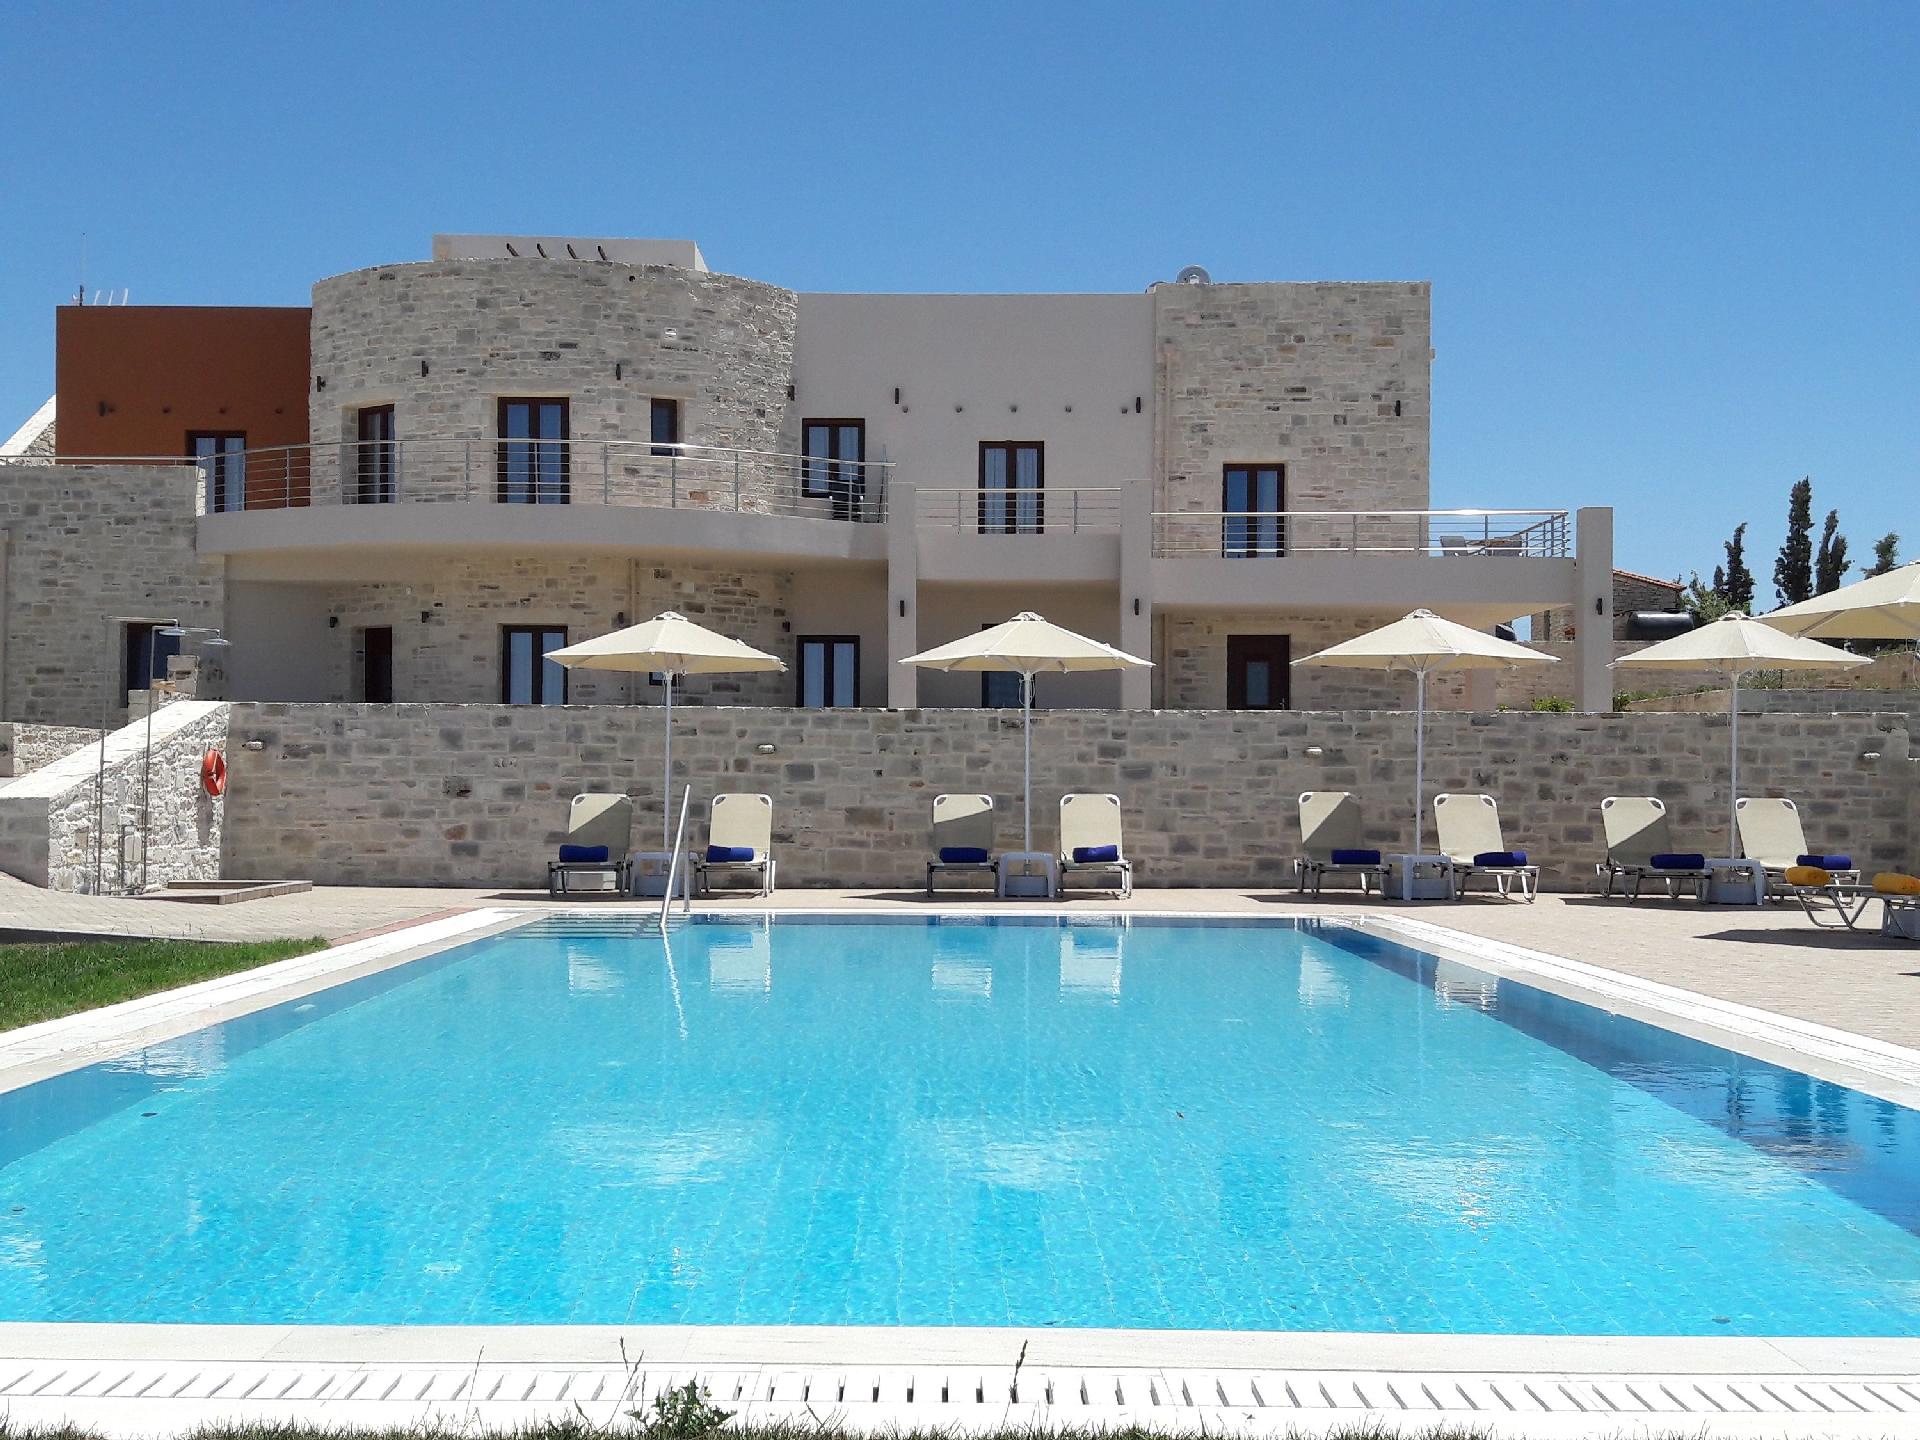 Ferienwohnung für 4 Personen ca. 85 m² i Ferienwohnung in Griechenland